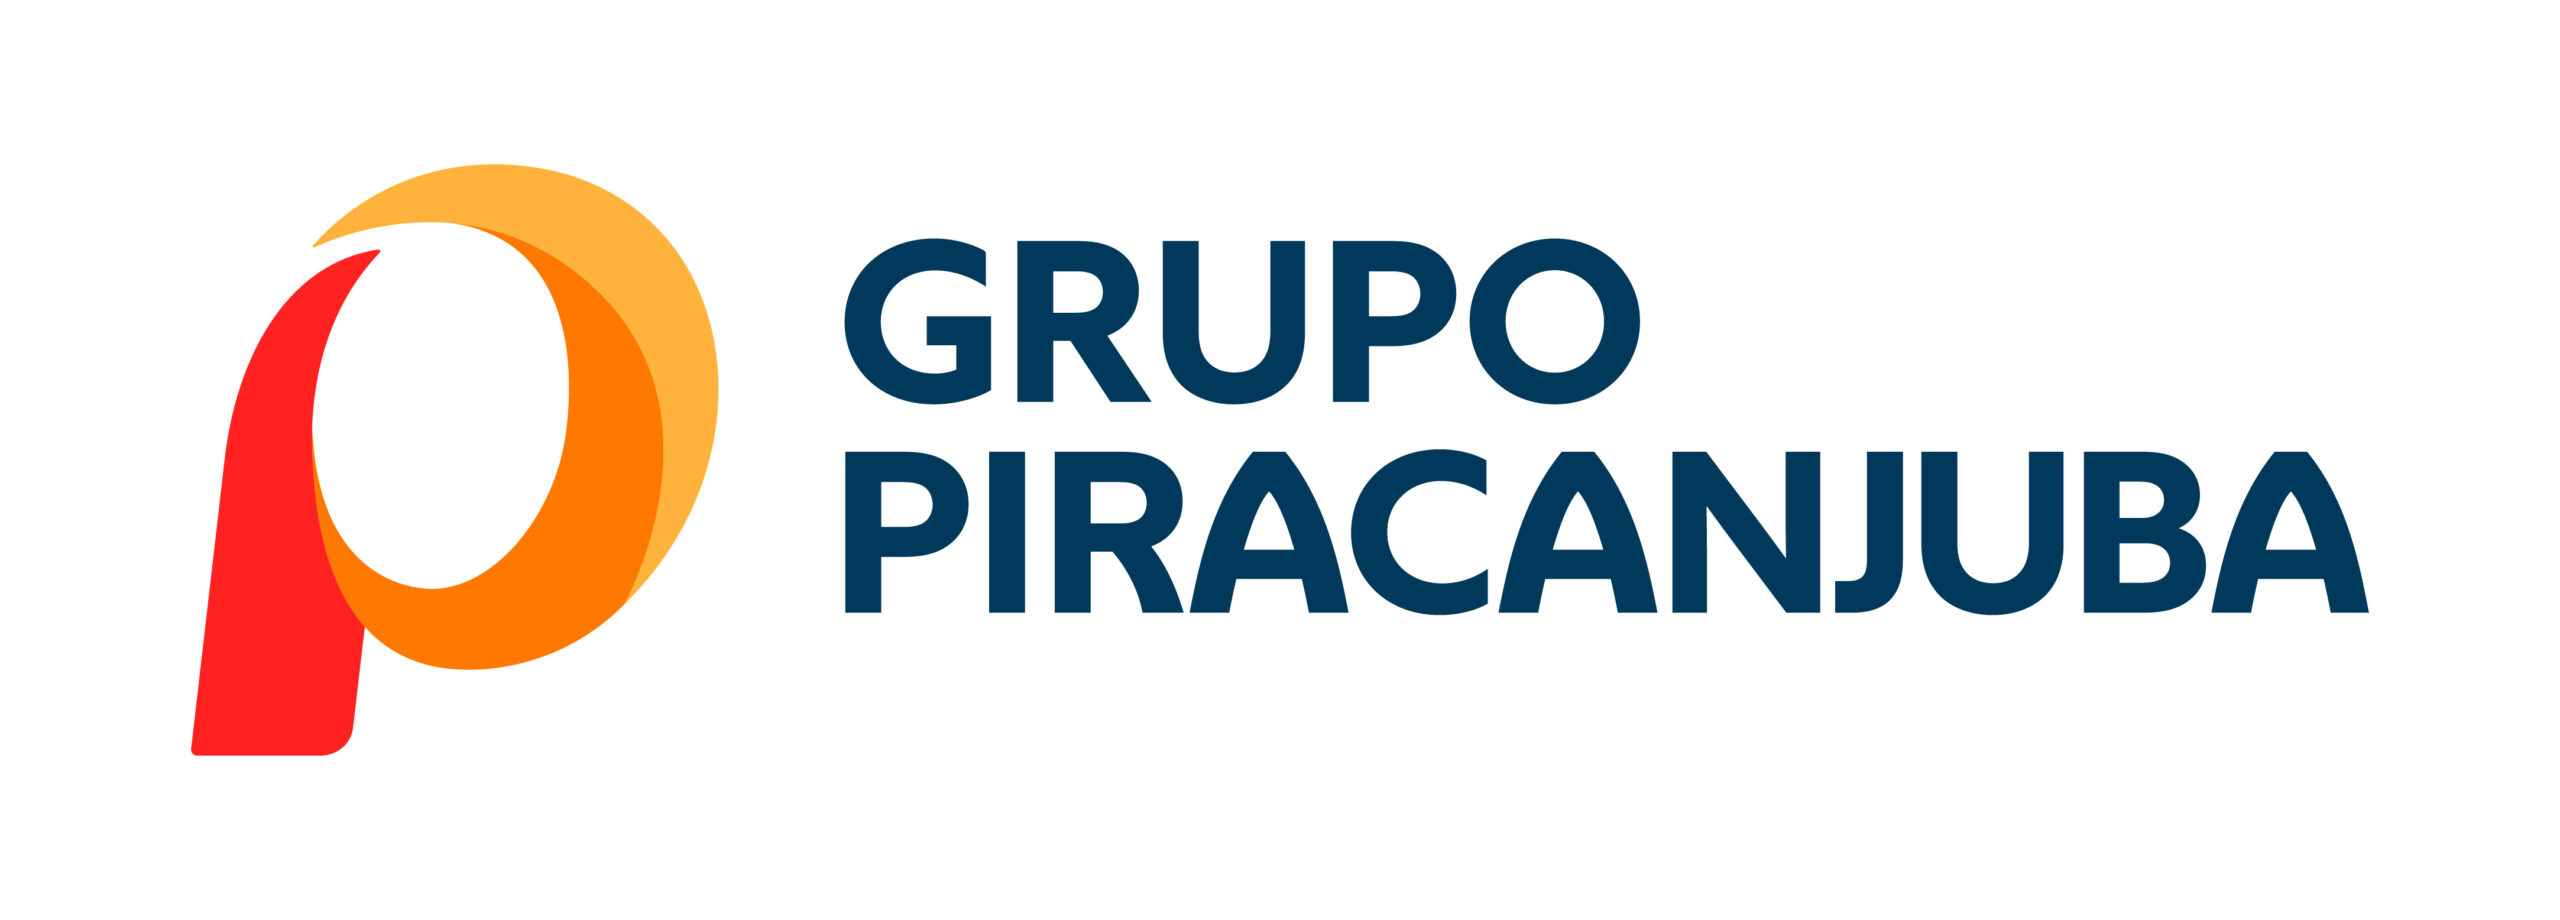 Você está visualizando atualmente Piracanjuba anuncia sua nova marca corporativa, o Grupo Piracanjuba